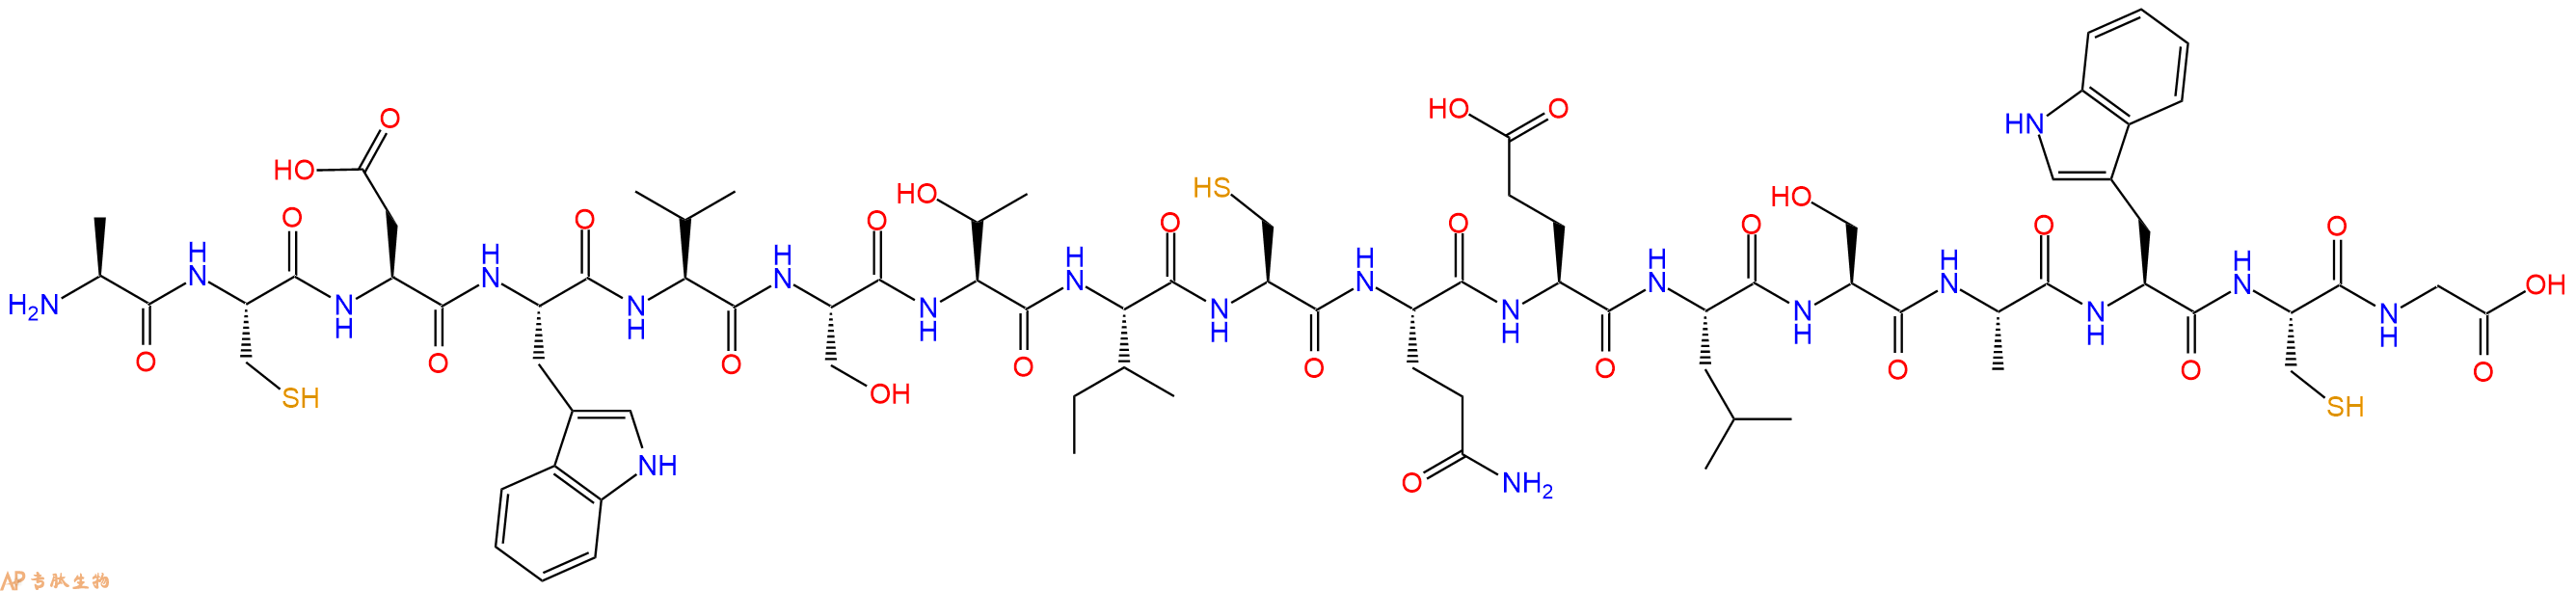 专肽生物产品H2N-Ala-Cys-Asp-Trp-Val-Ser-Thr-Ile-Cys-Gln-Glu-Leu-Ser-Ala-Trp-Cys-Gly-COOH